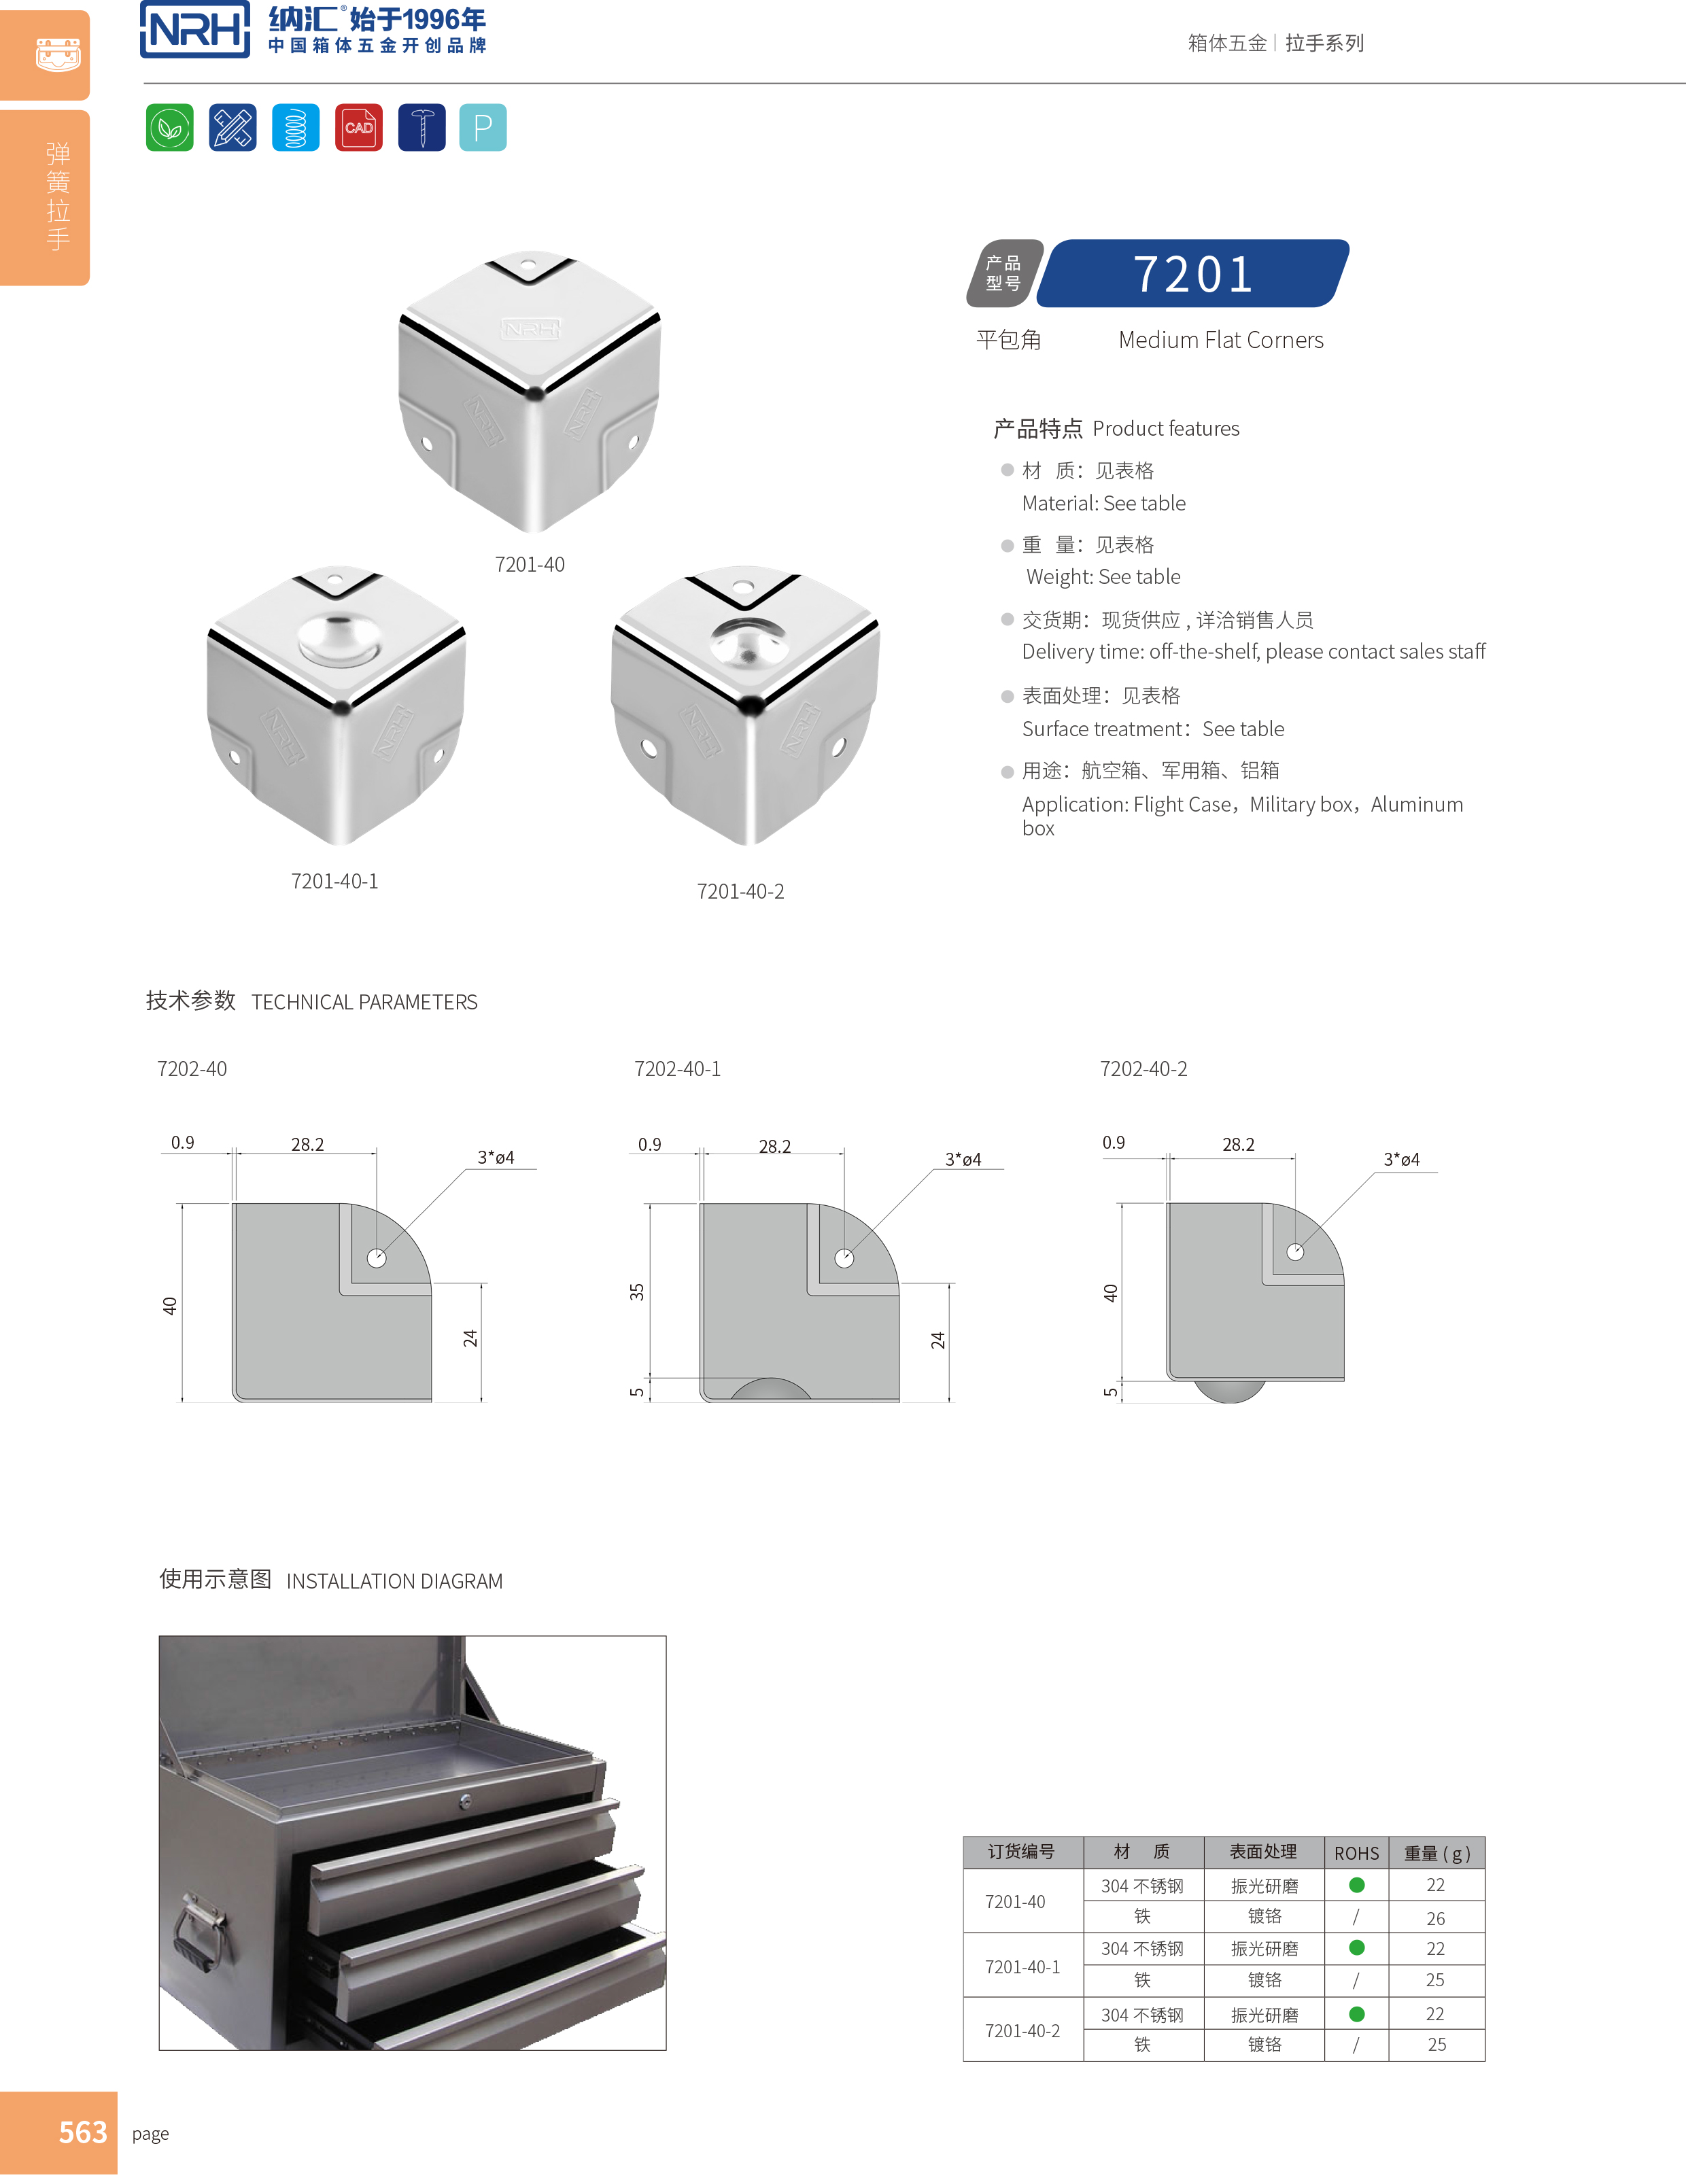 铝箱包角7201-40-2木箱铁护角_不锈钢圆弧护角_NRH纳汇铝箱包角